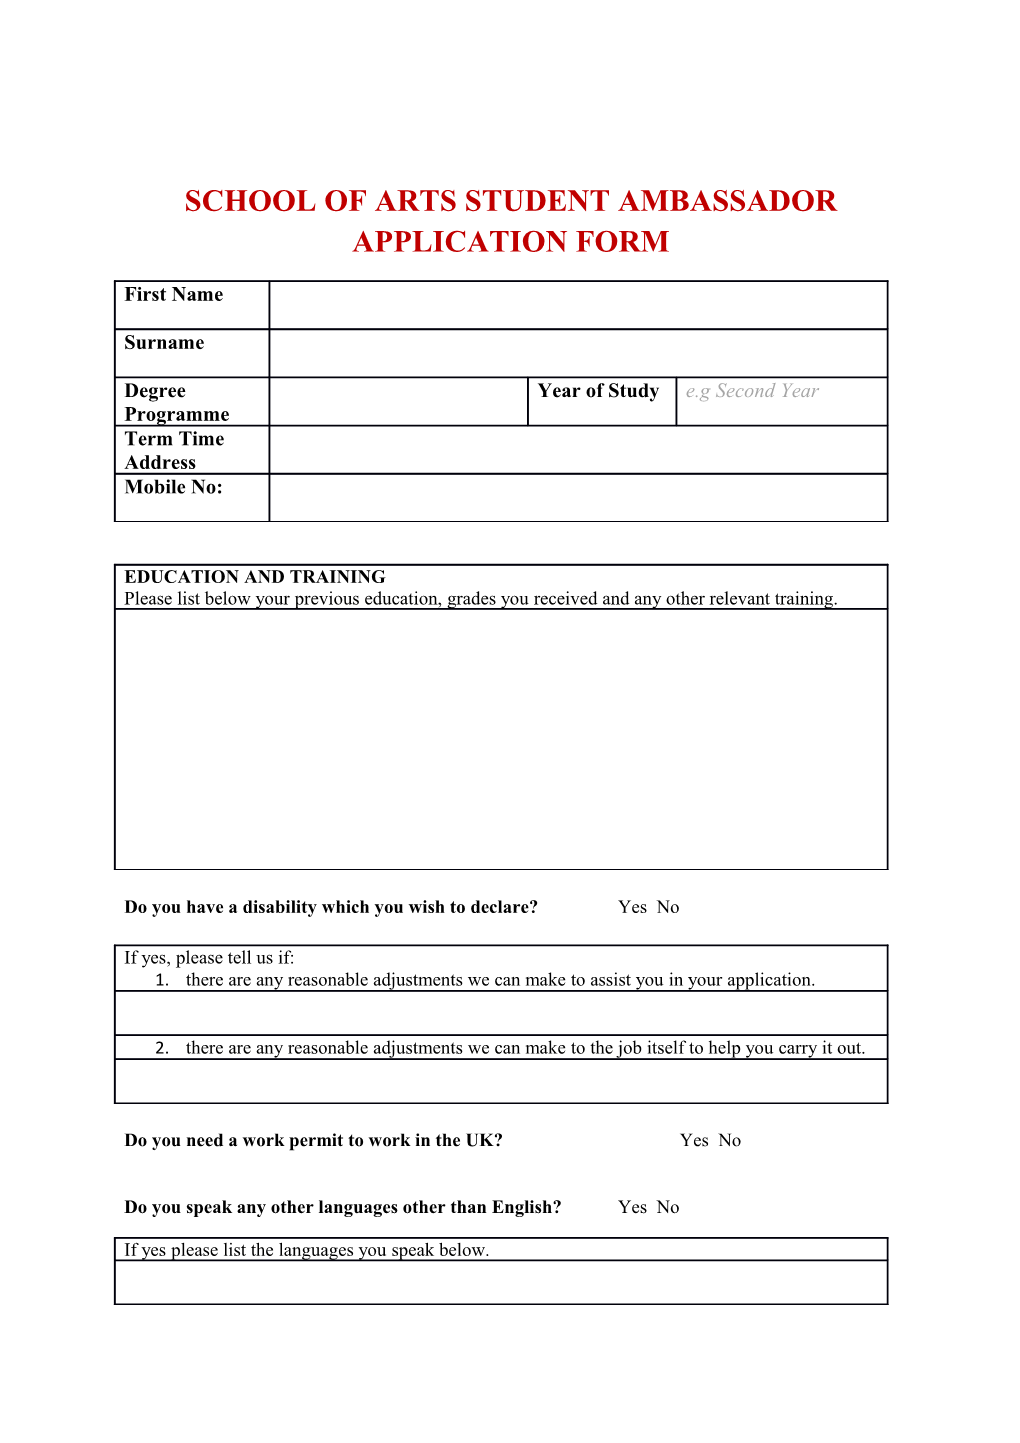 School of Arts Student Ambassador Application Form